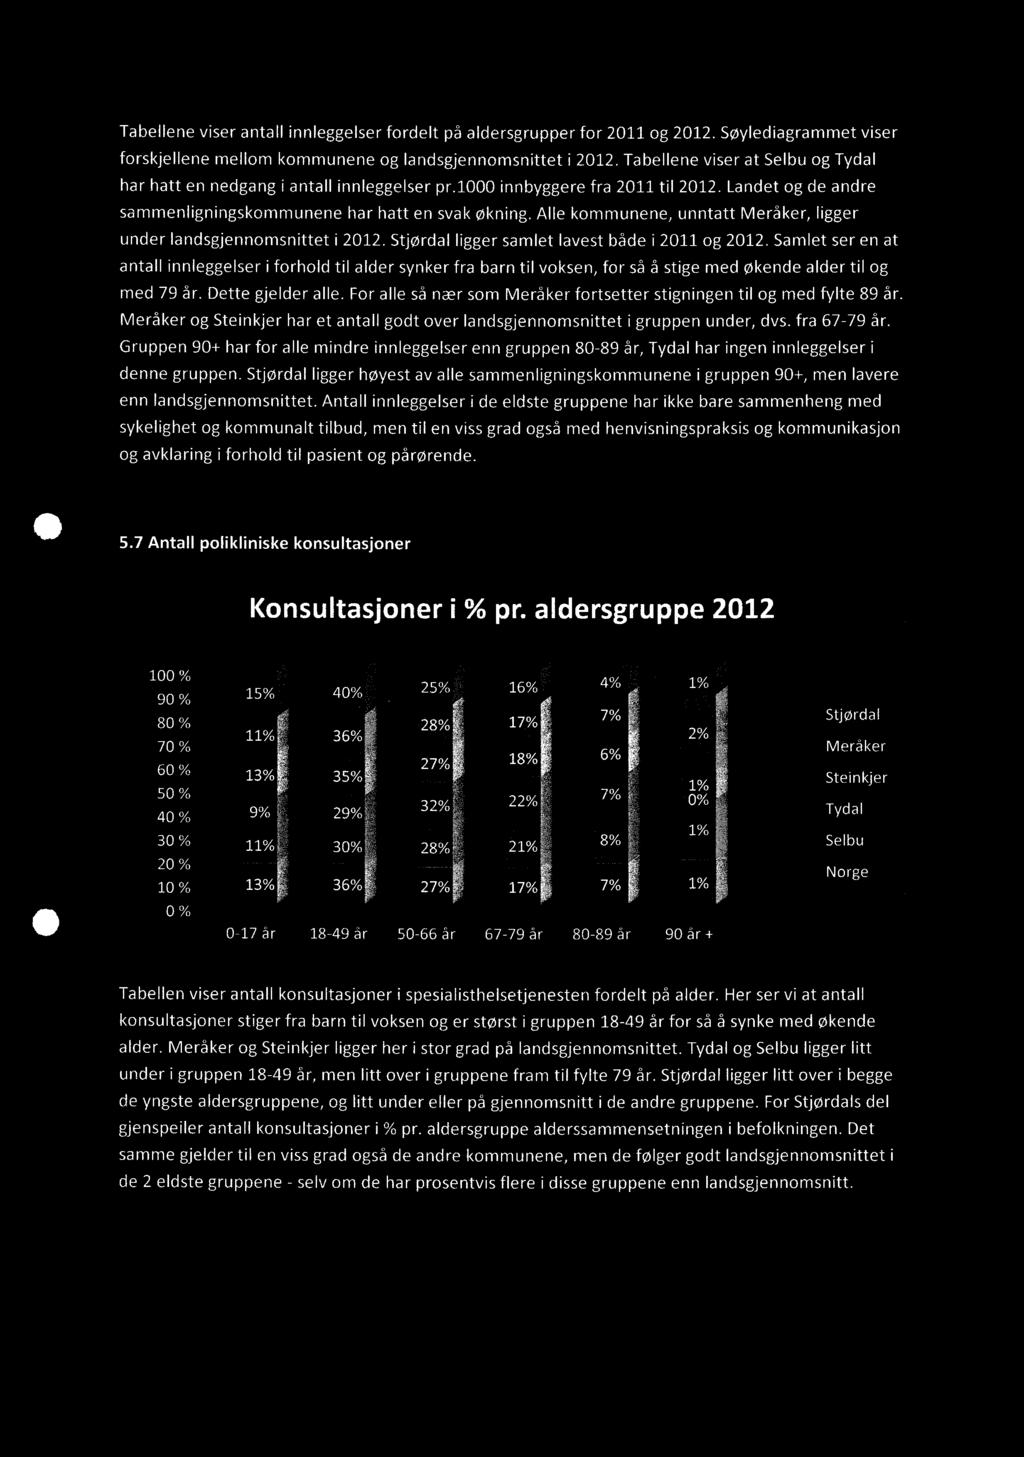 Tabellene viser antall innleggelser fordelt på aldersgrupper for 2011 og 2012. Søylediagrammet viser forskjellene mellom kommunene og landsgjennomsnittet i 2012.